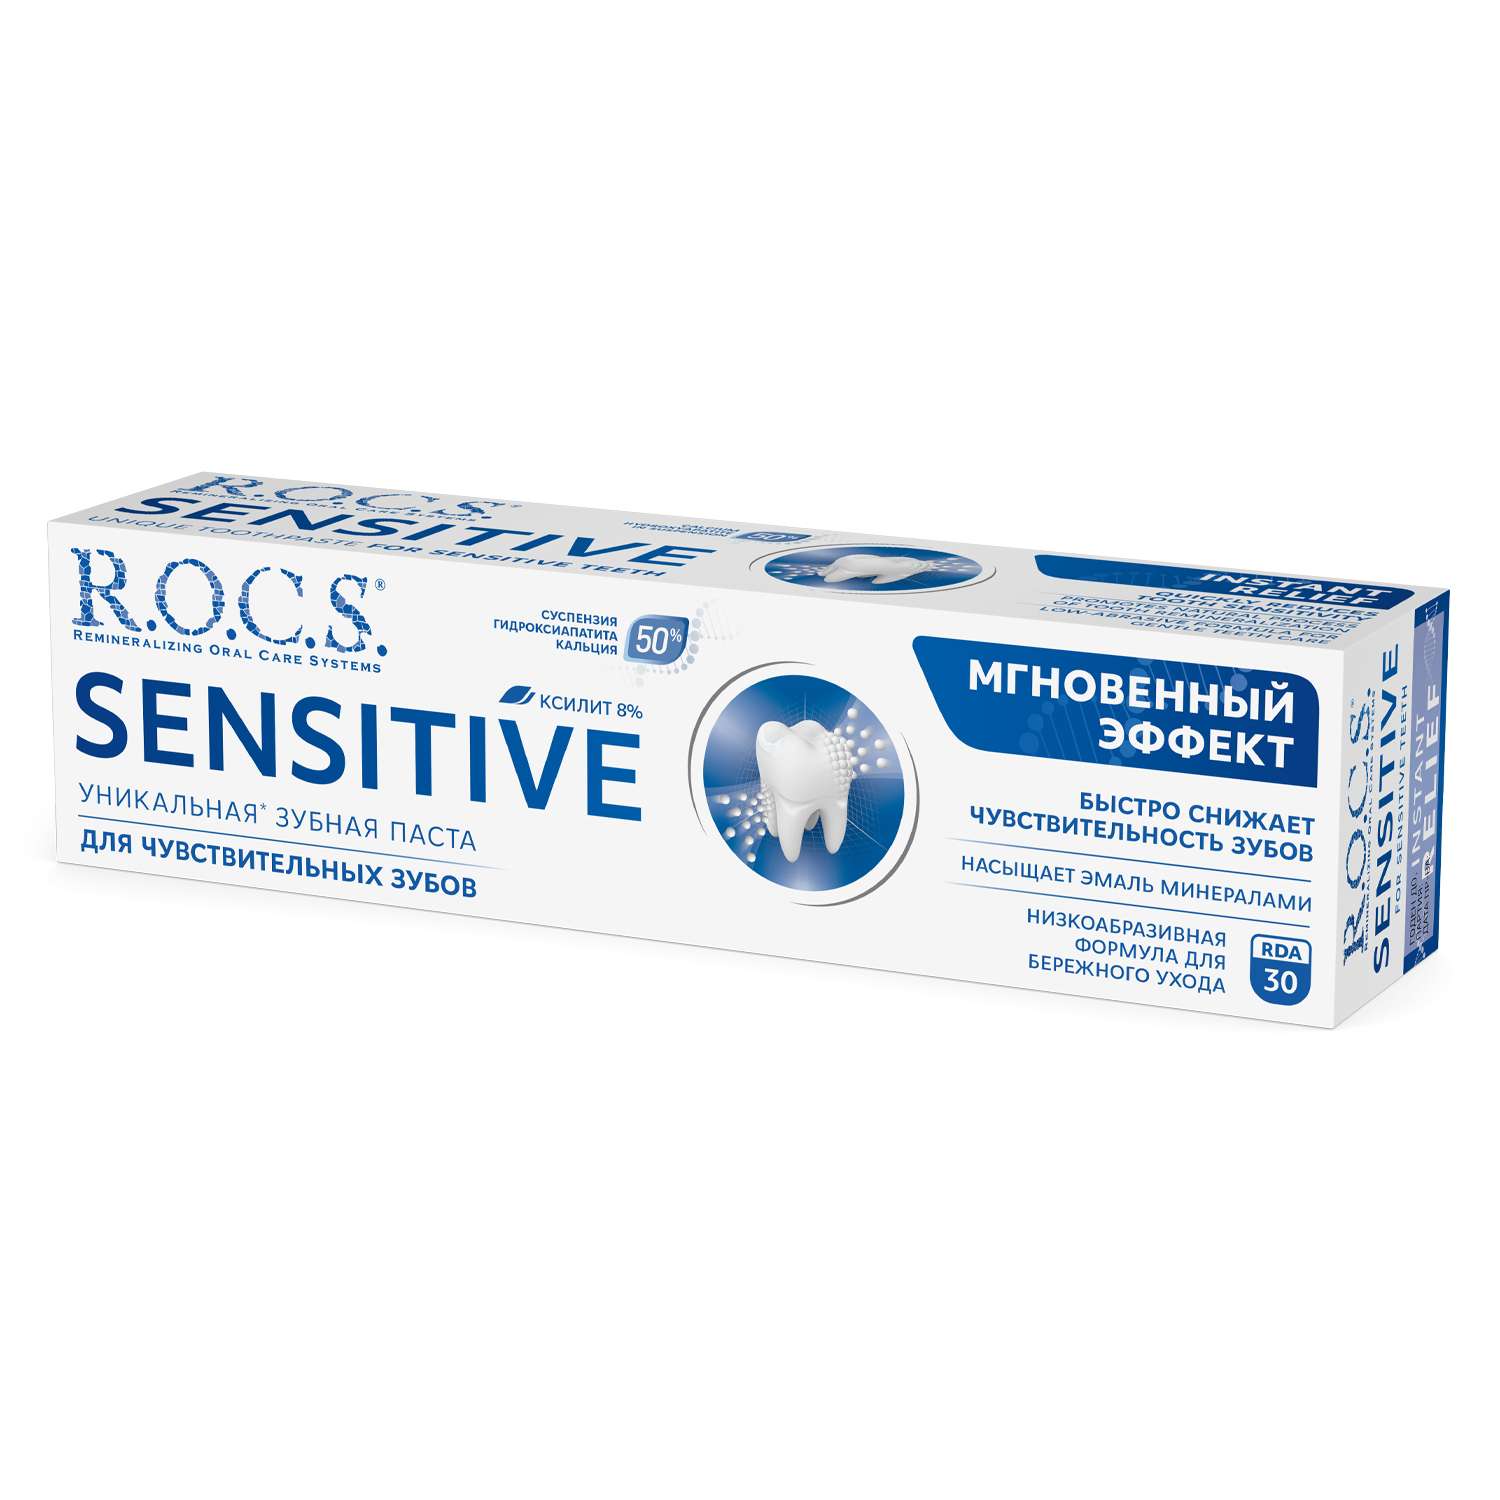 Зубная паста R.O.C.S. SENSITIVE Мгновенный эффект 94 гр - фото 2